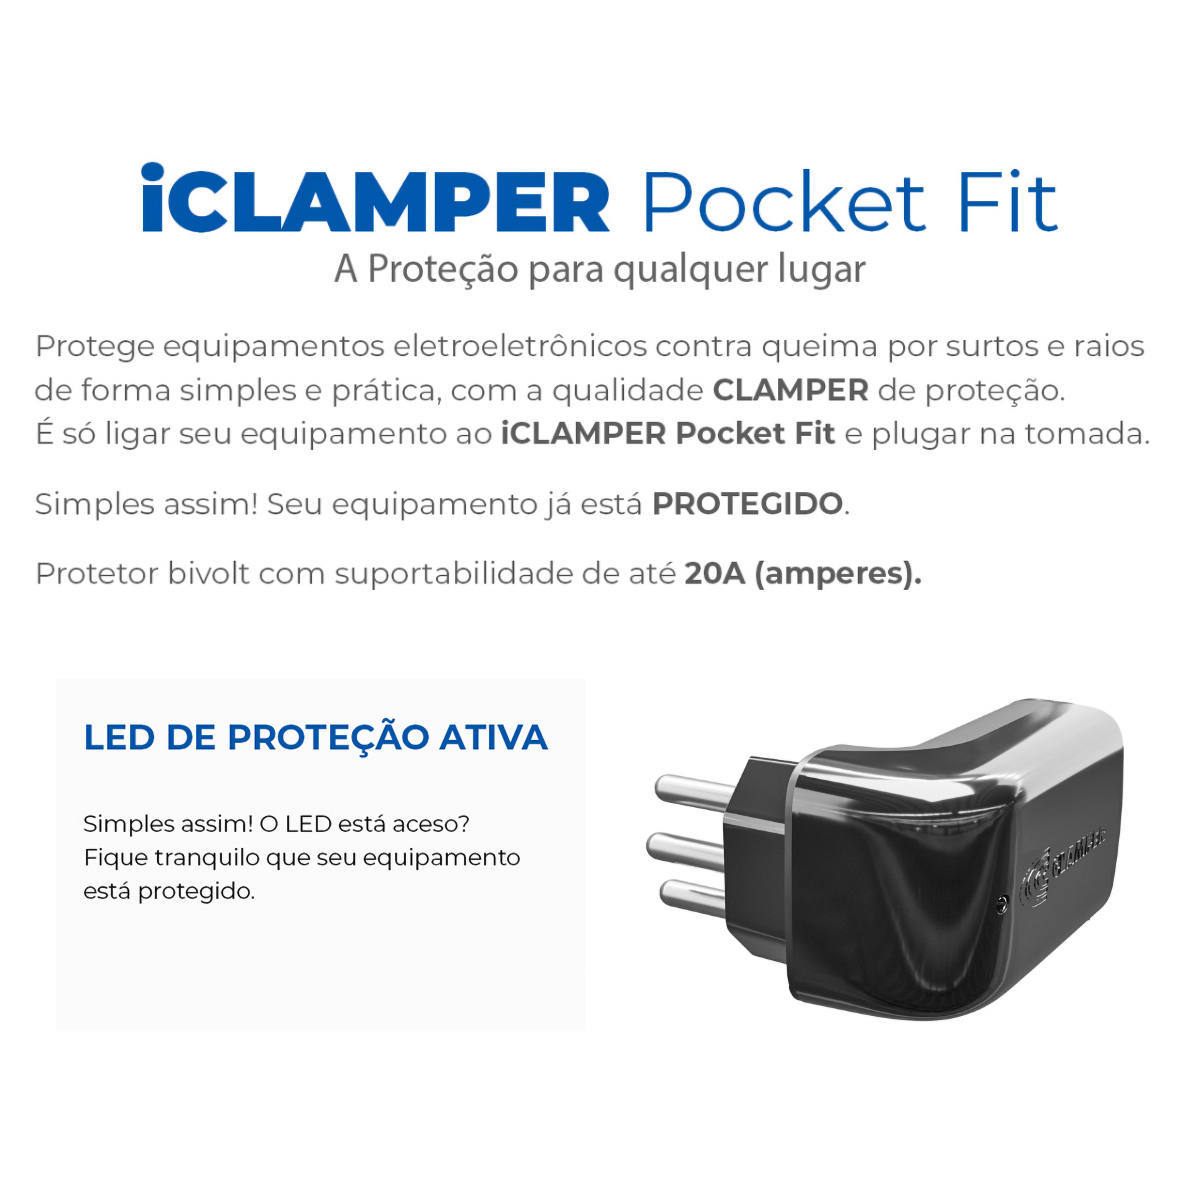 iClamper Pocket Fit 3 Pinos 20A DPS Proteção contra Raios e Surtos Elétricos Mesmo Sem Aterramento Clamper Preto